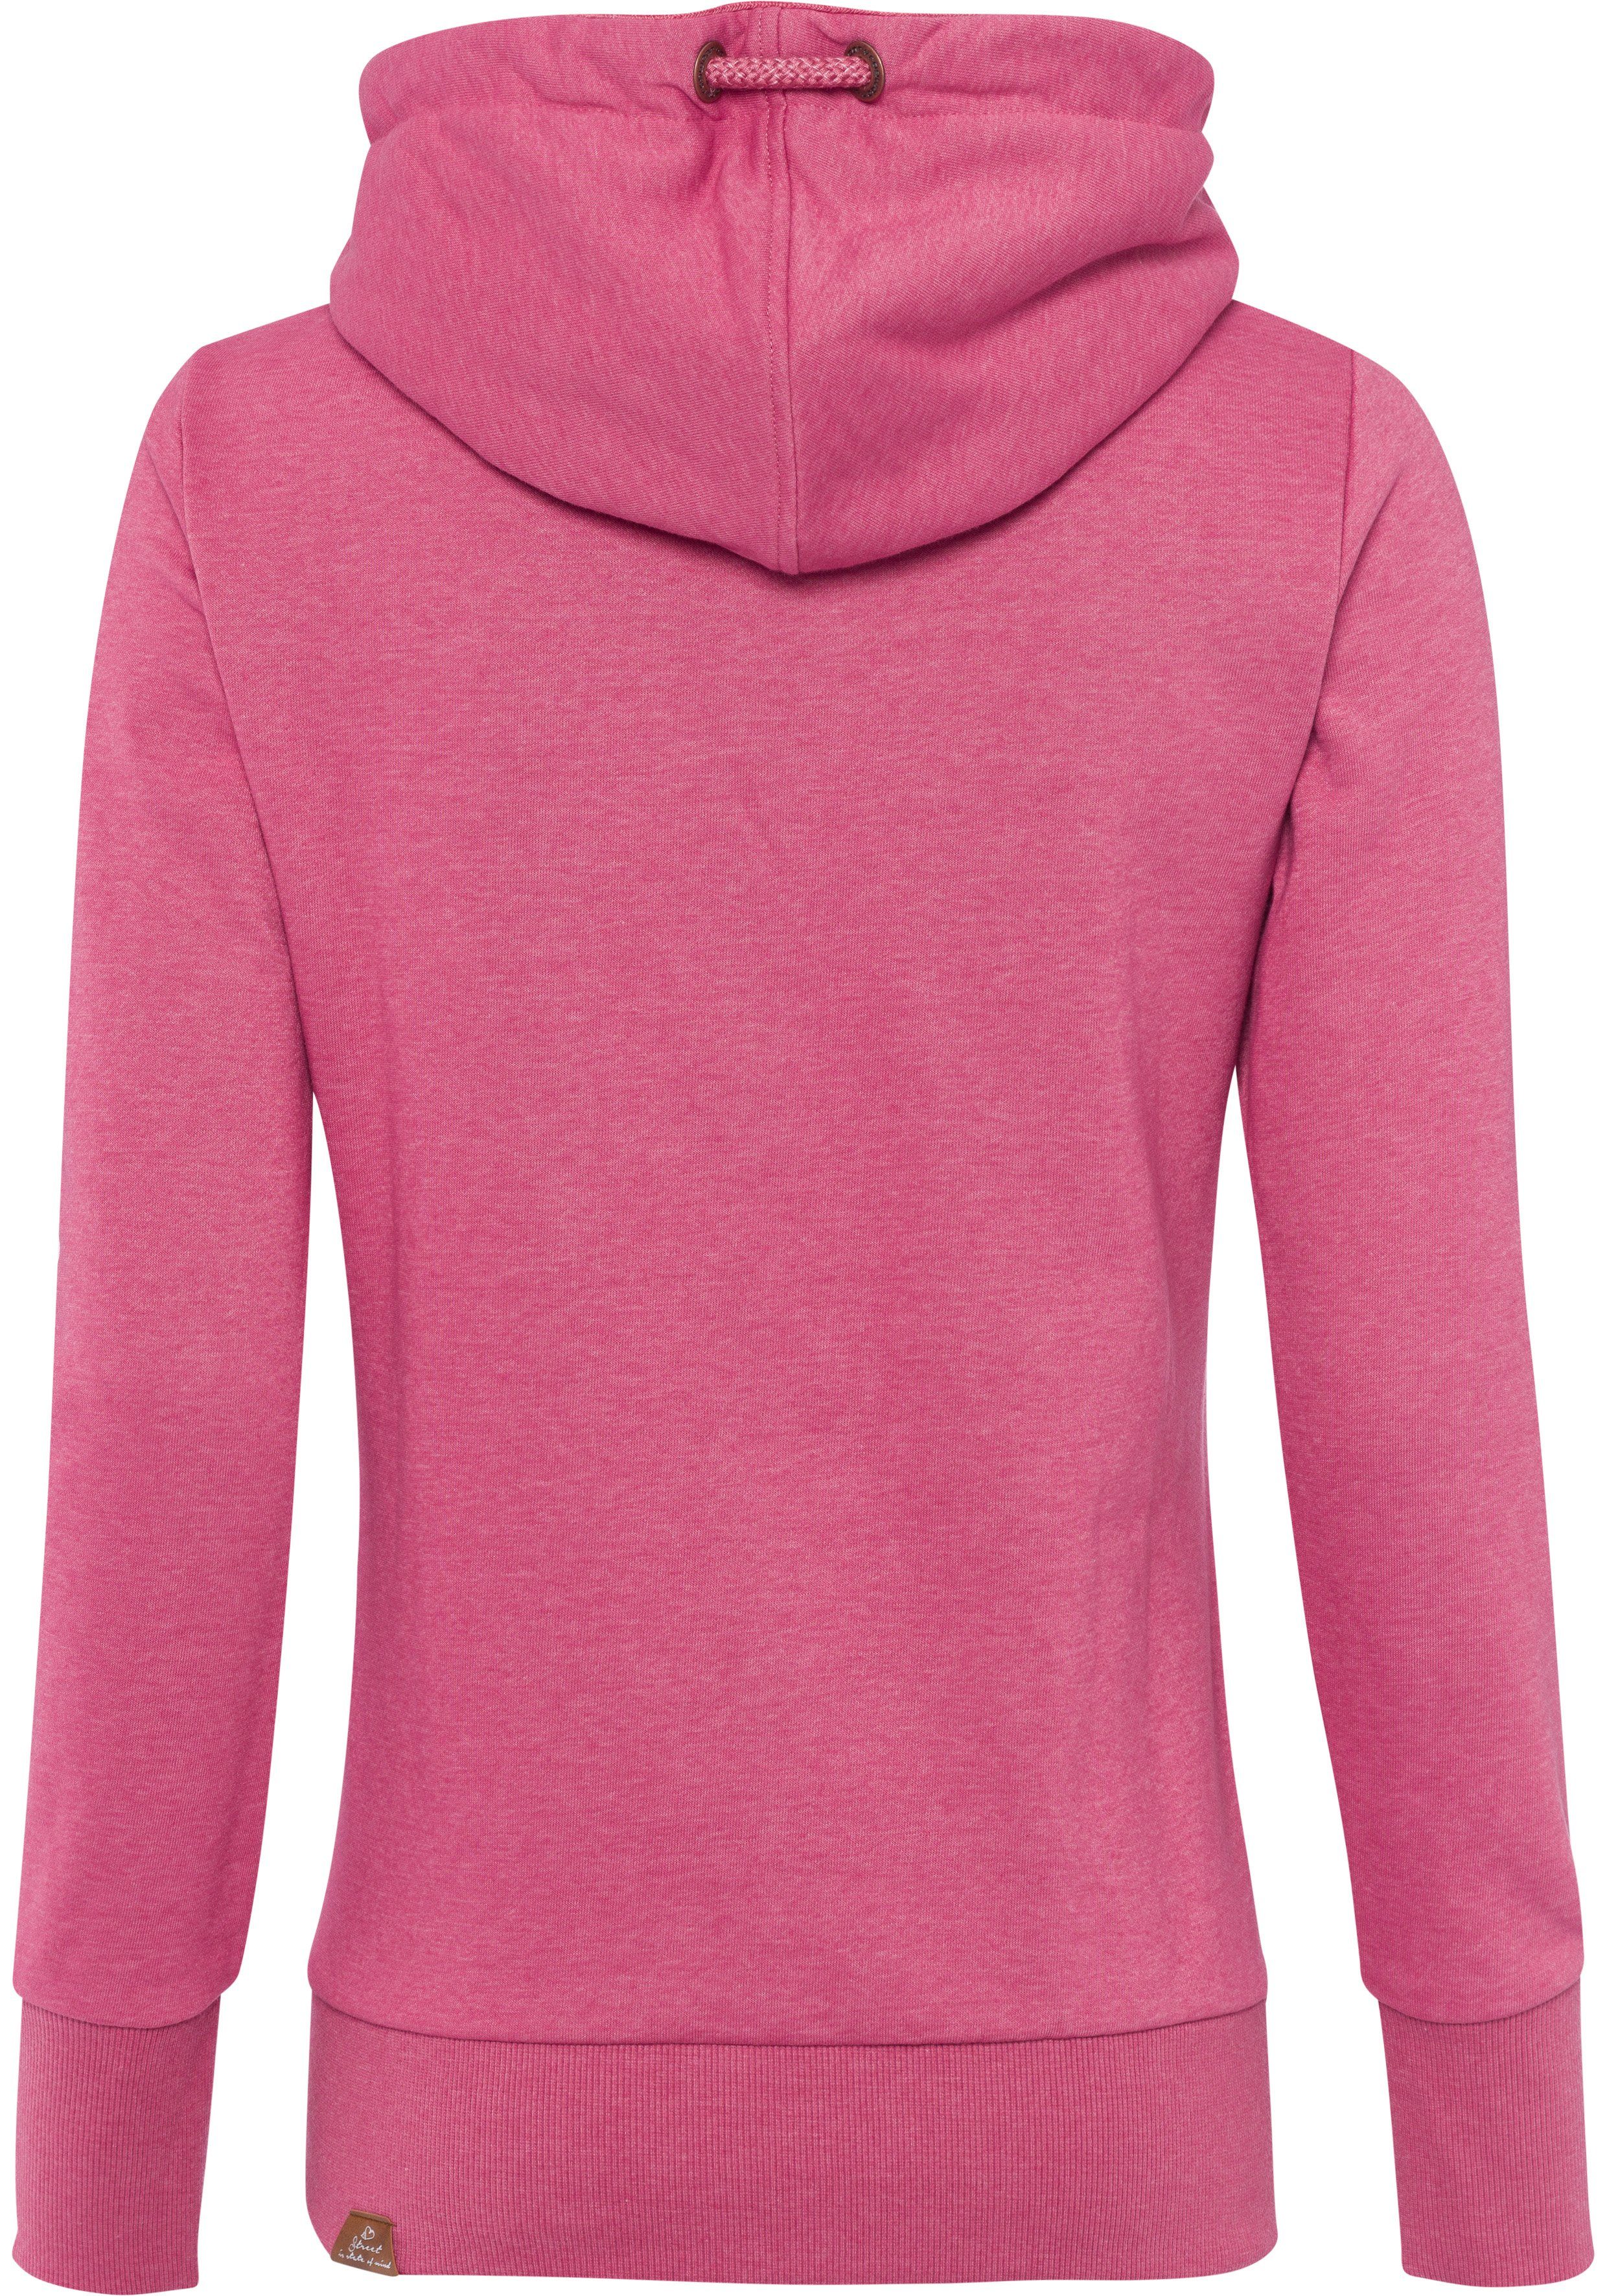 Sweater Schalkragen asymmetrischem BOLD mit rose GRIPY 4041 Ragwear